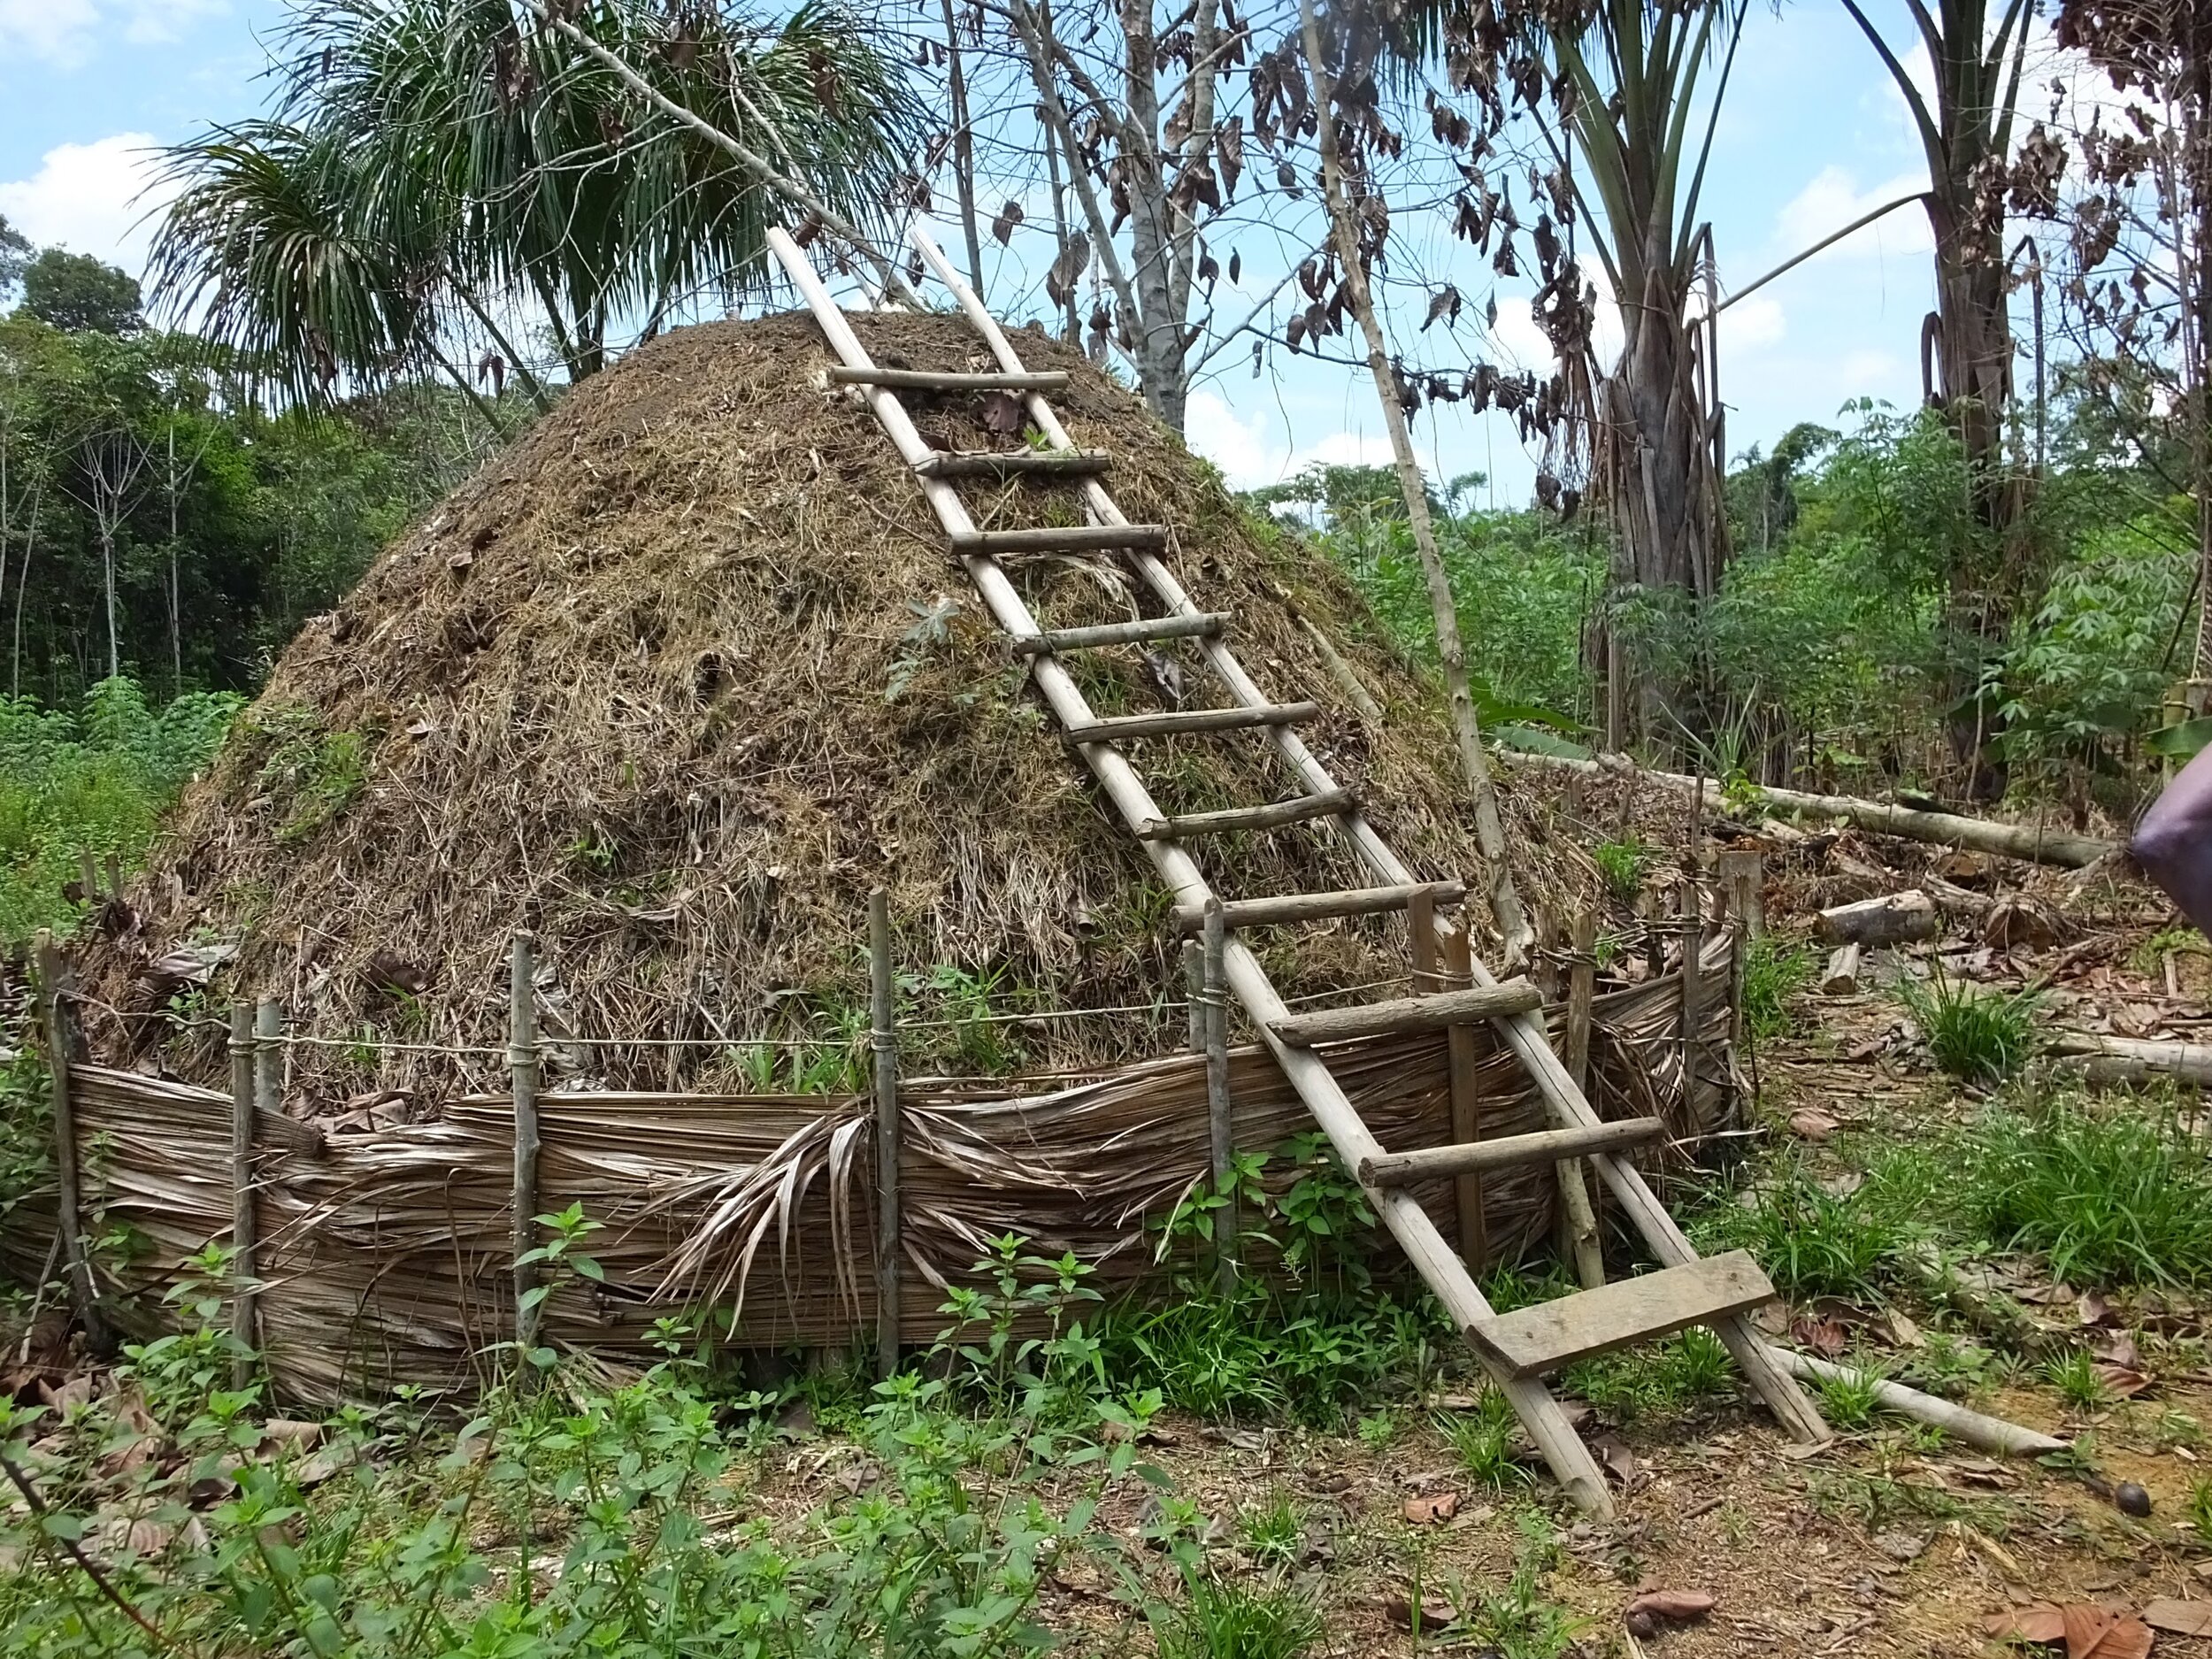 A charcoal making hut